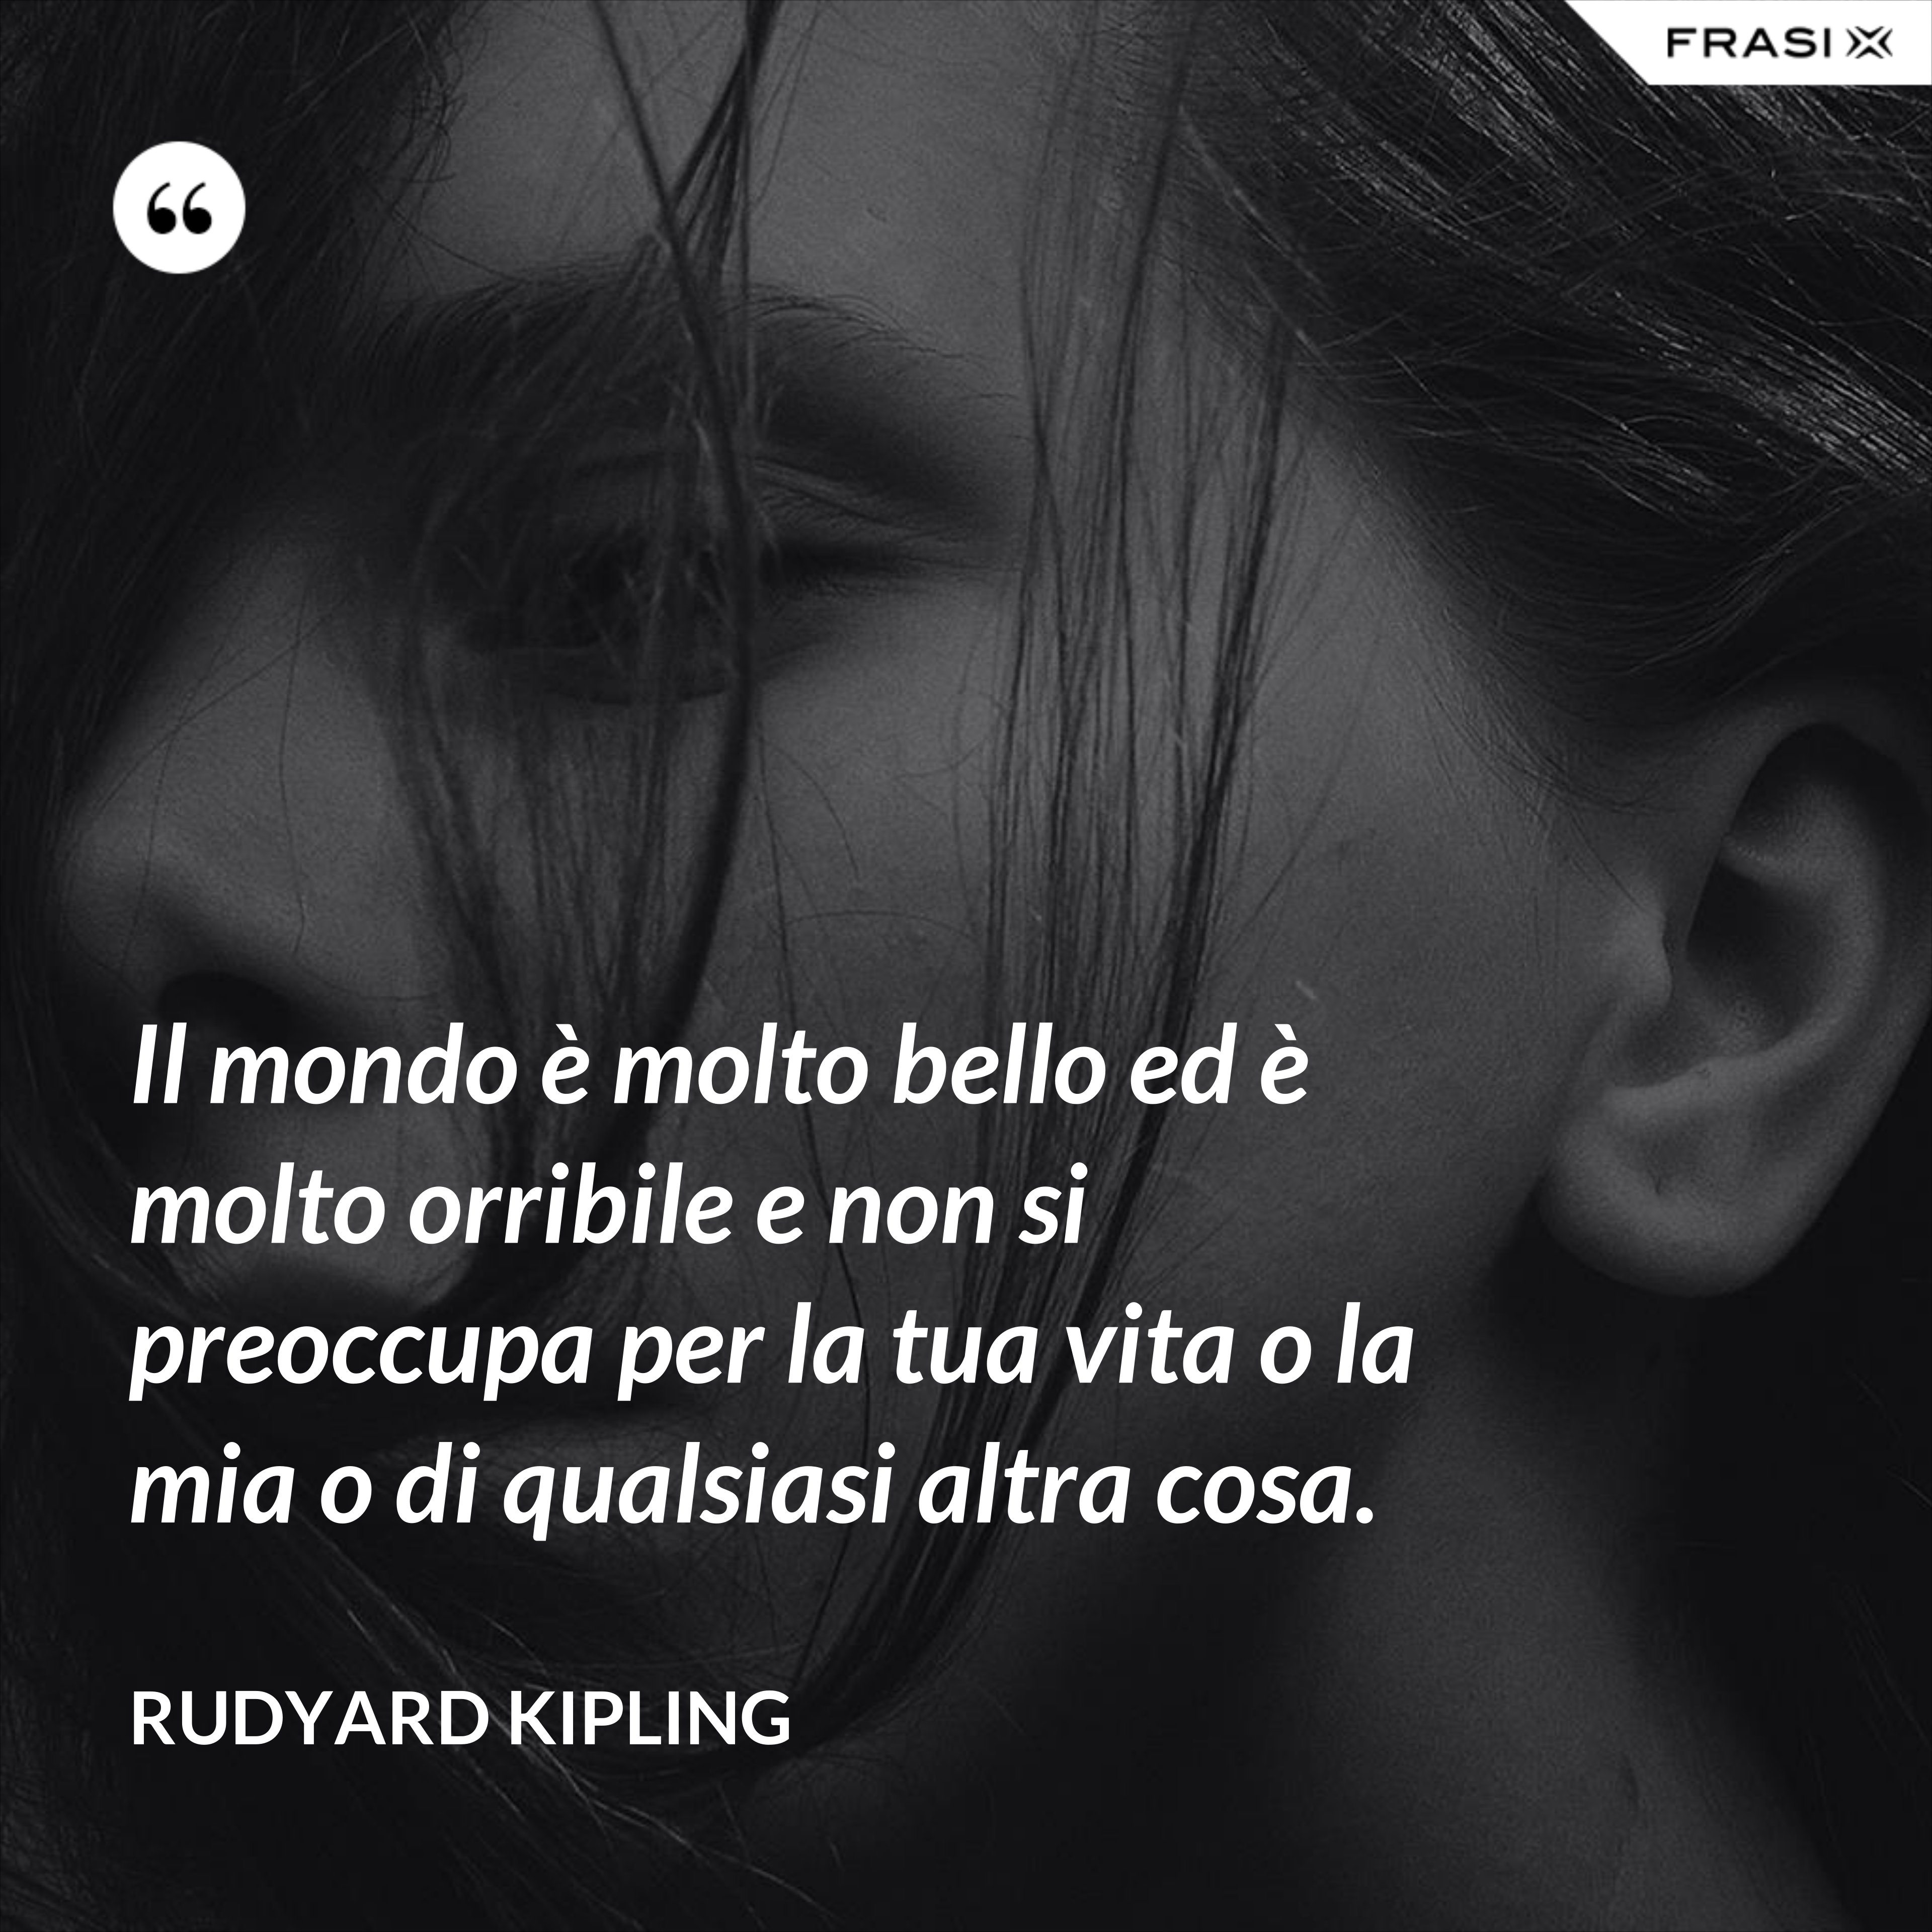 Il mondo è molto bello ed è molto orribile e non si preoccupa per la tua vita o la mia o di qualsiasi altra cosa. - Rudyard Kipling